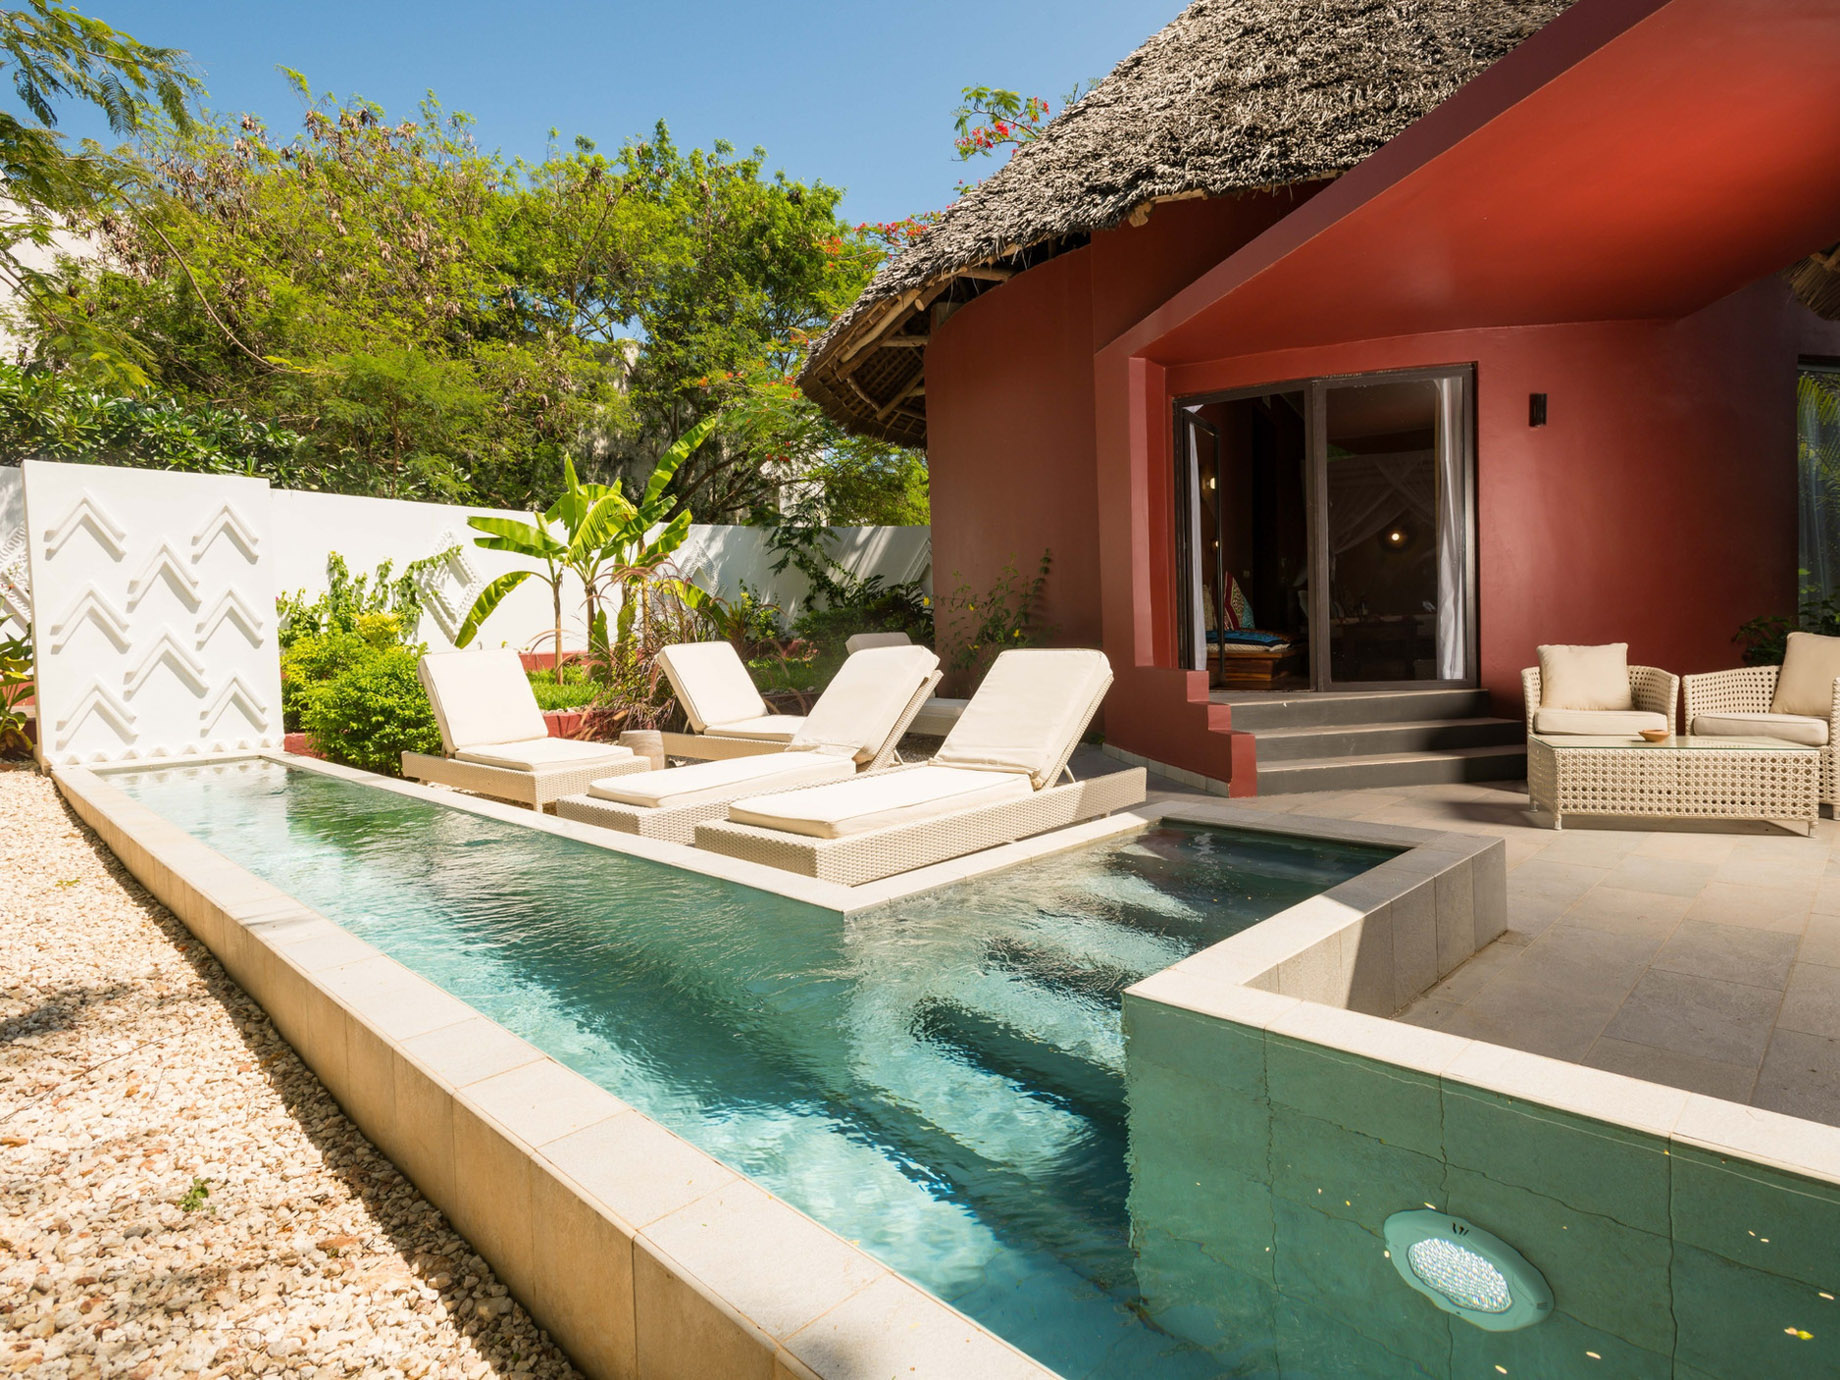 Gold Zanzibar Beach House & Spa Resort – Nungwi, Zanzibar, Tanzania – Jungle Villa Pool Deck